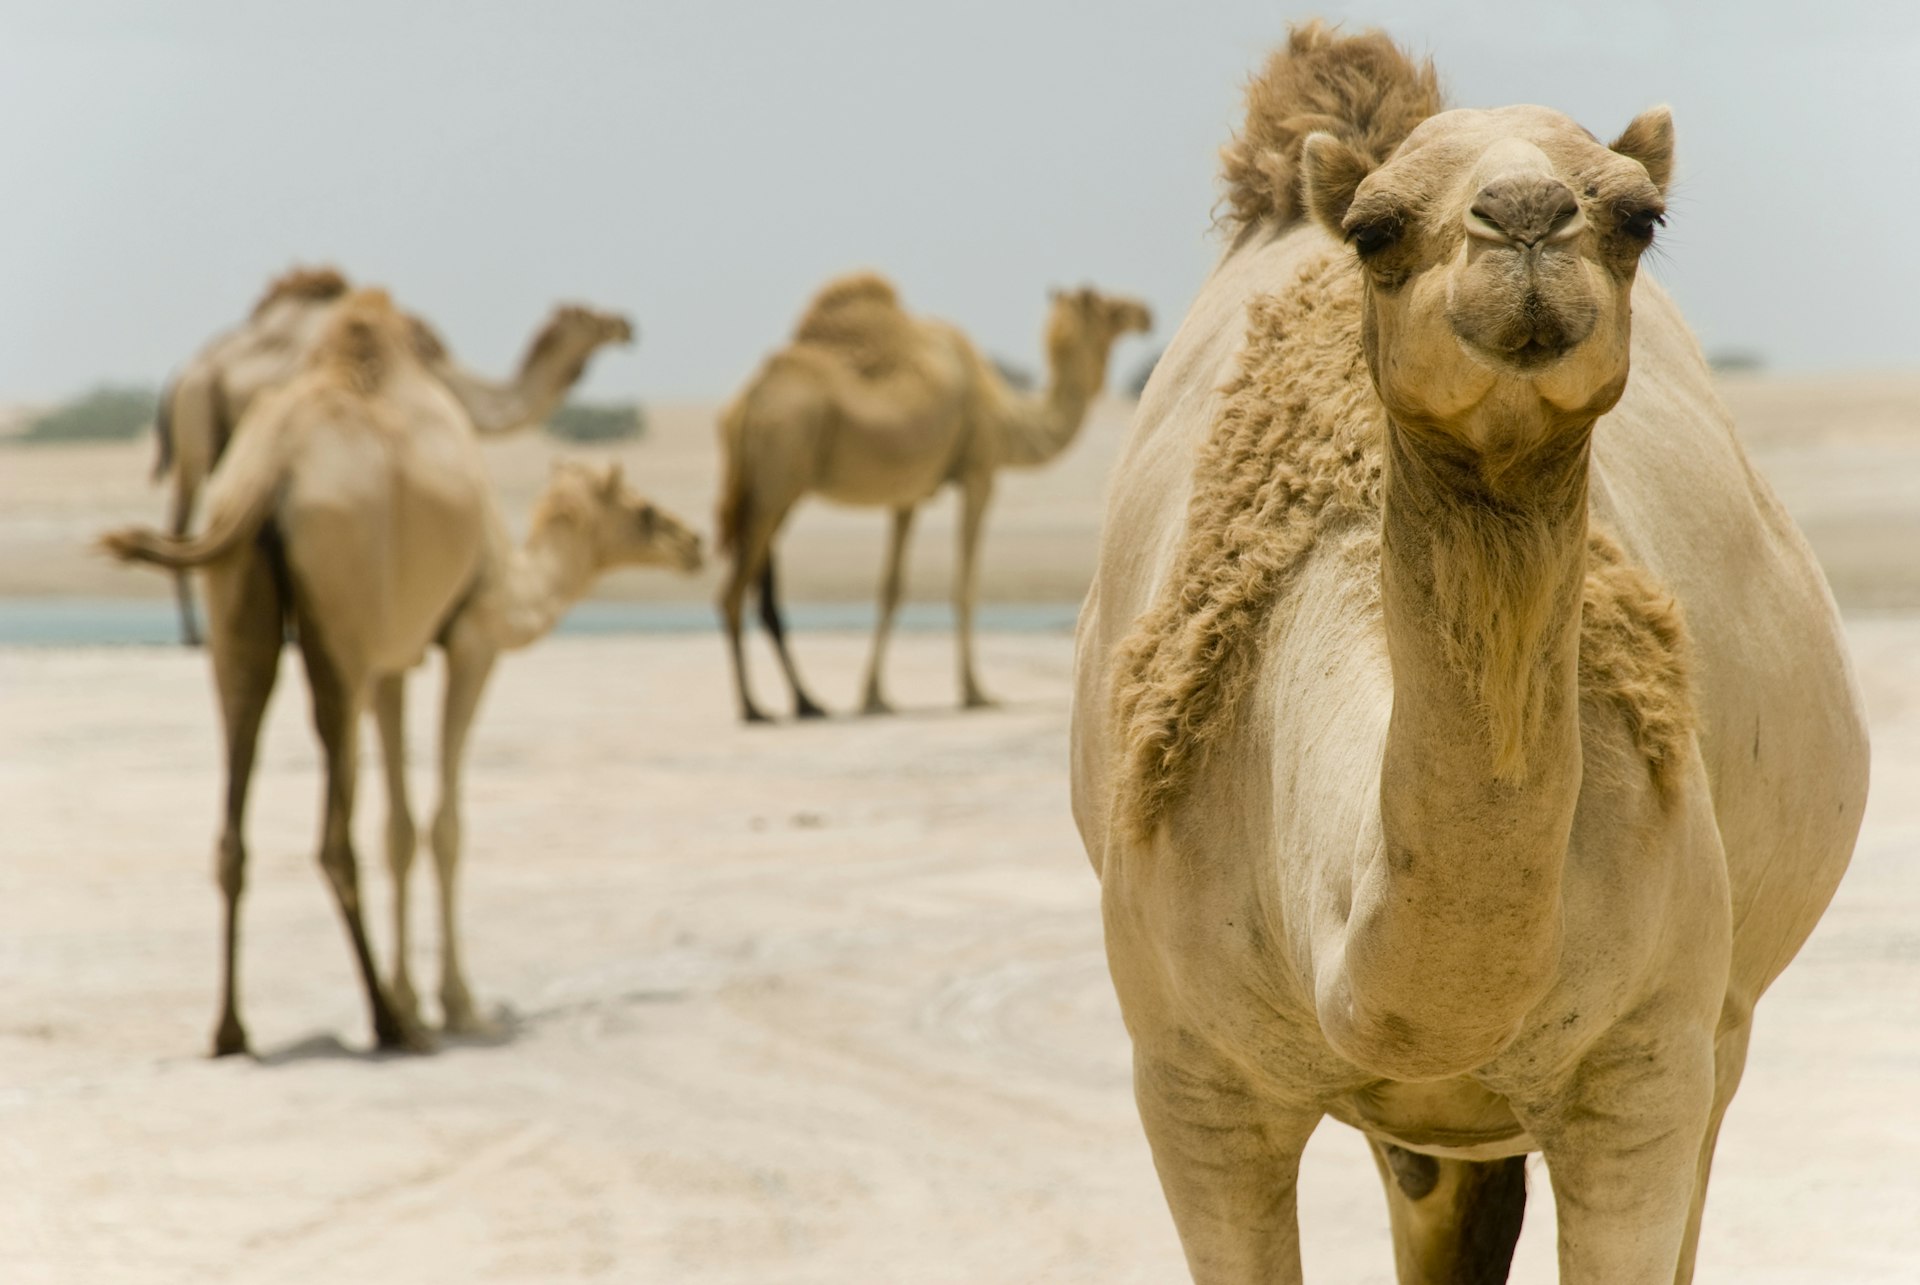 Camels in the Ras Al Khaimah desert